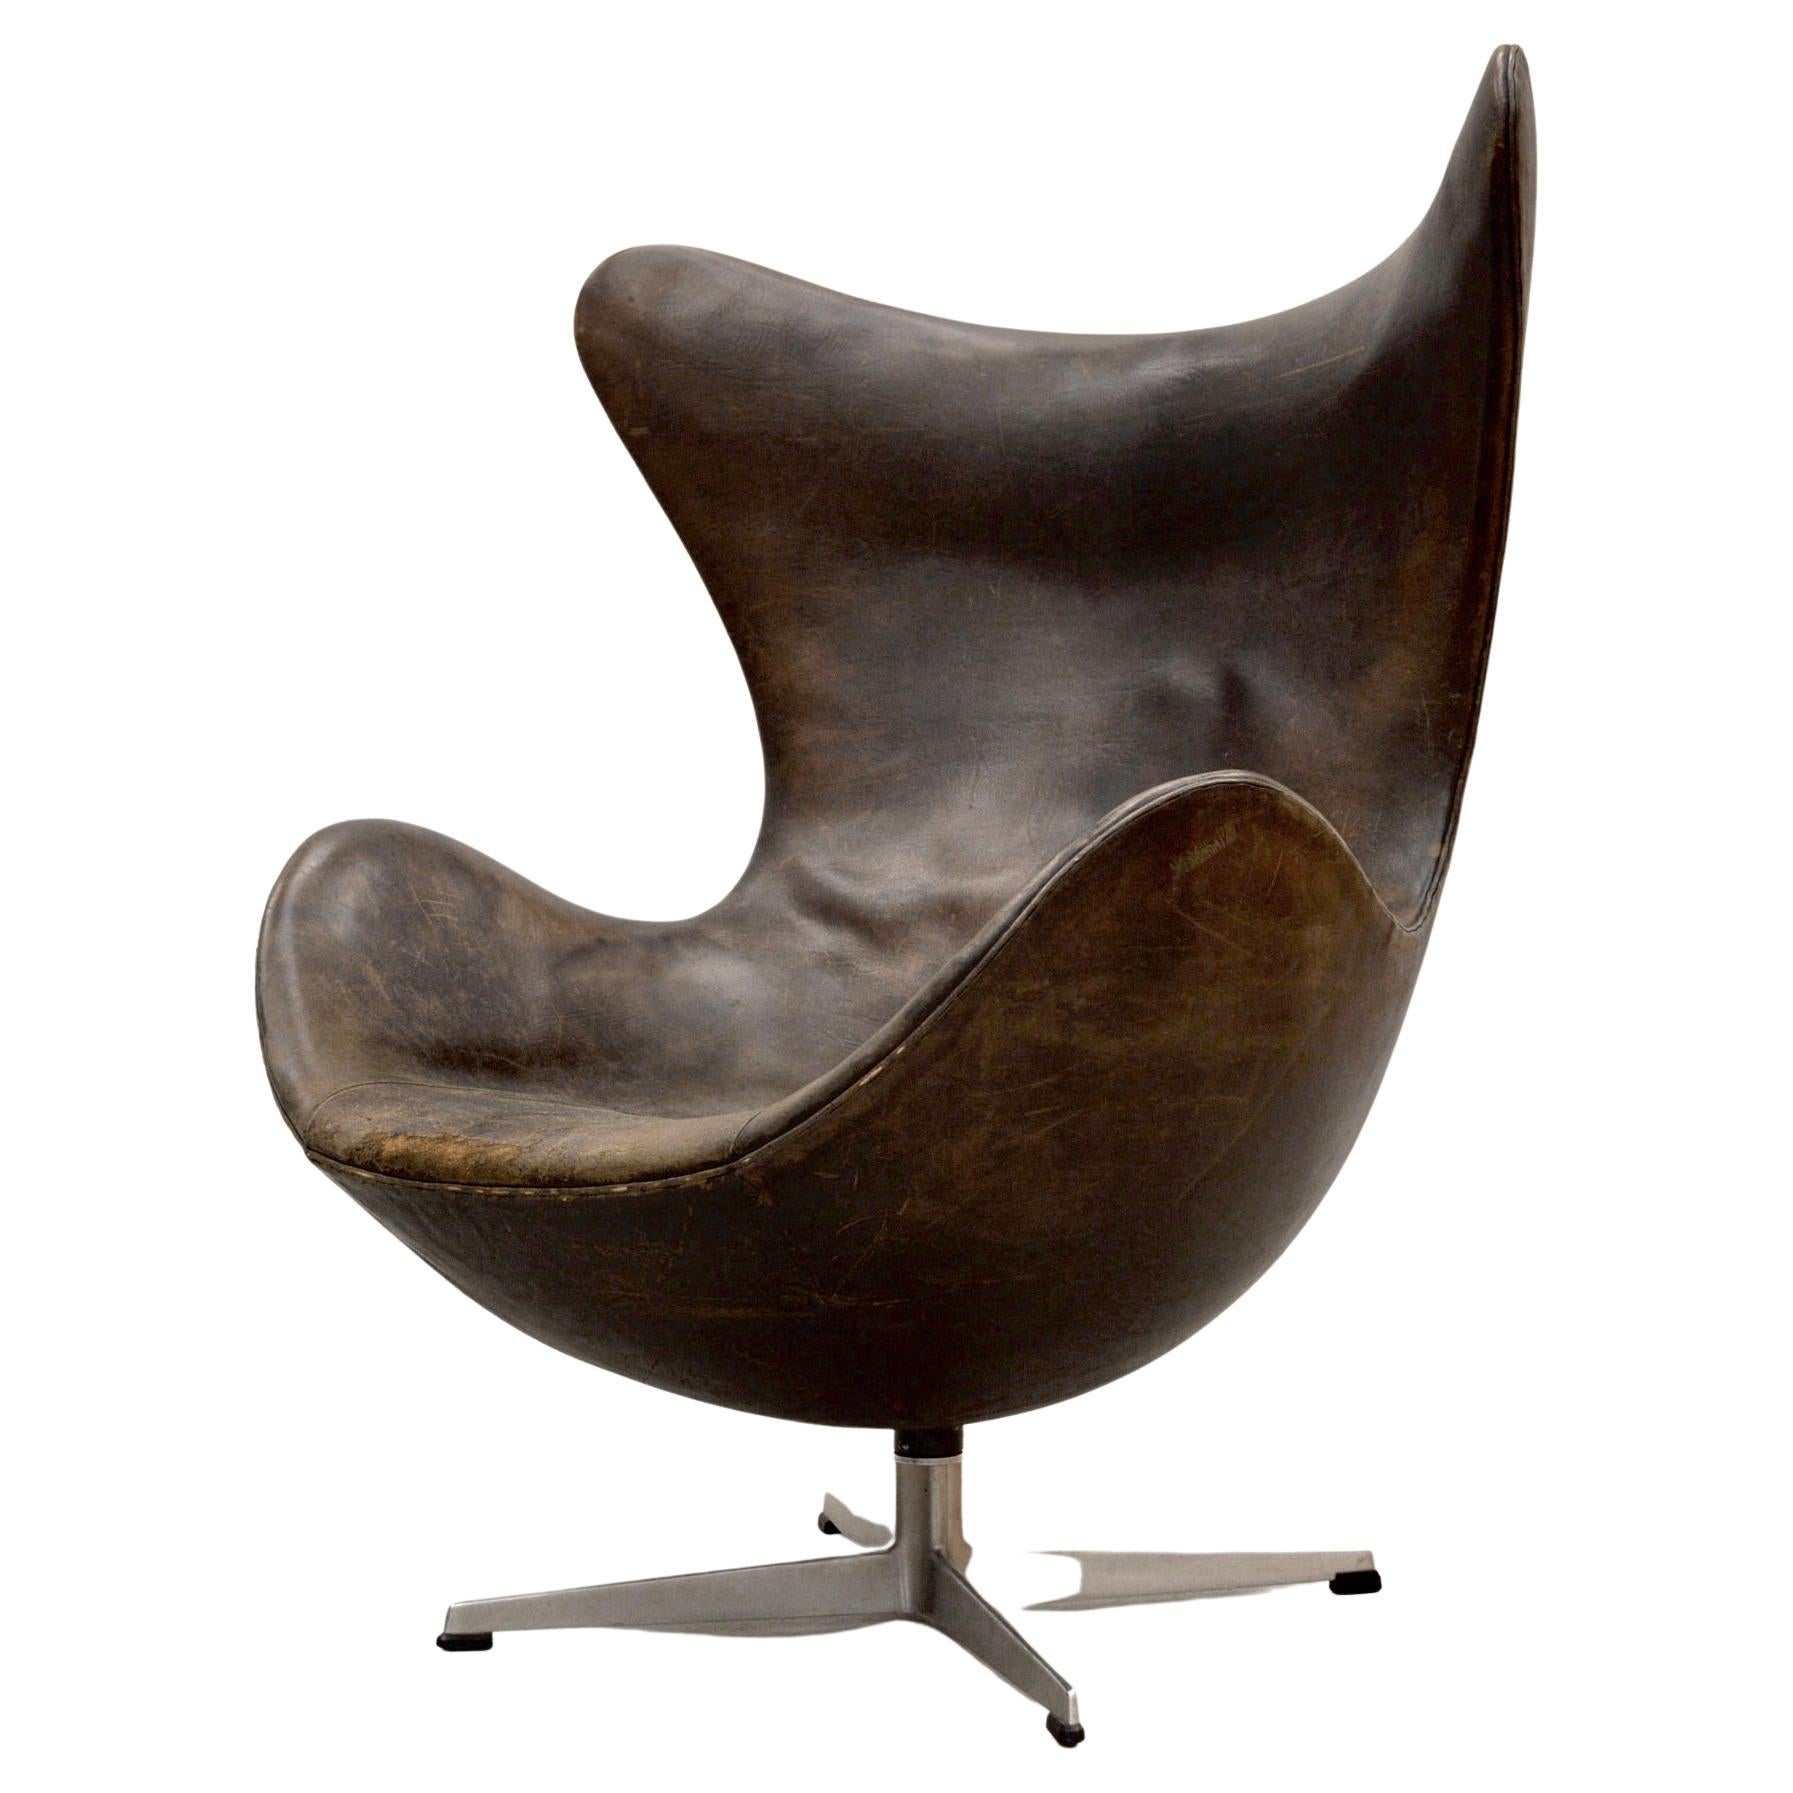 Arne Jacobsen Egg Chair by Fritz Hansen in Denmark, First Serie, 1958